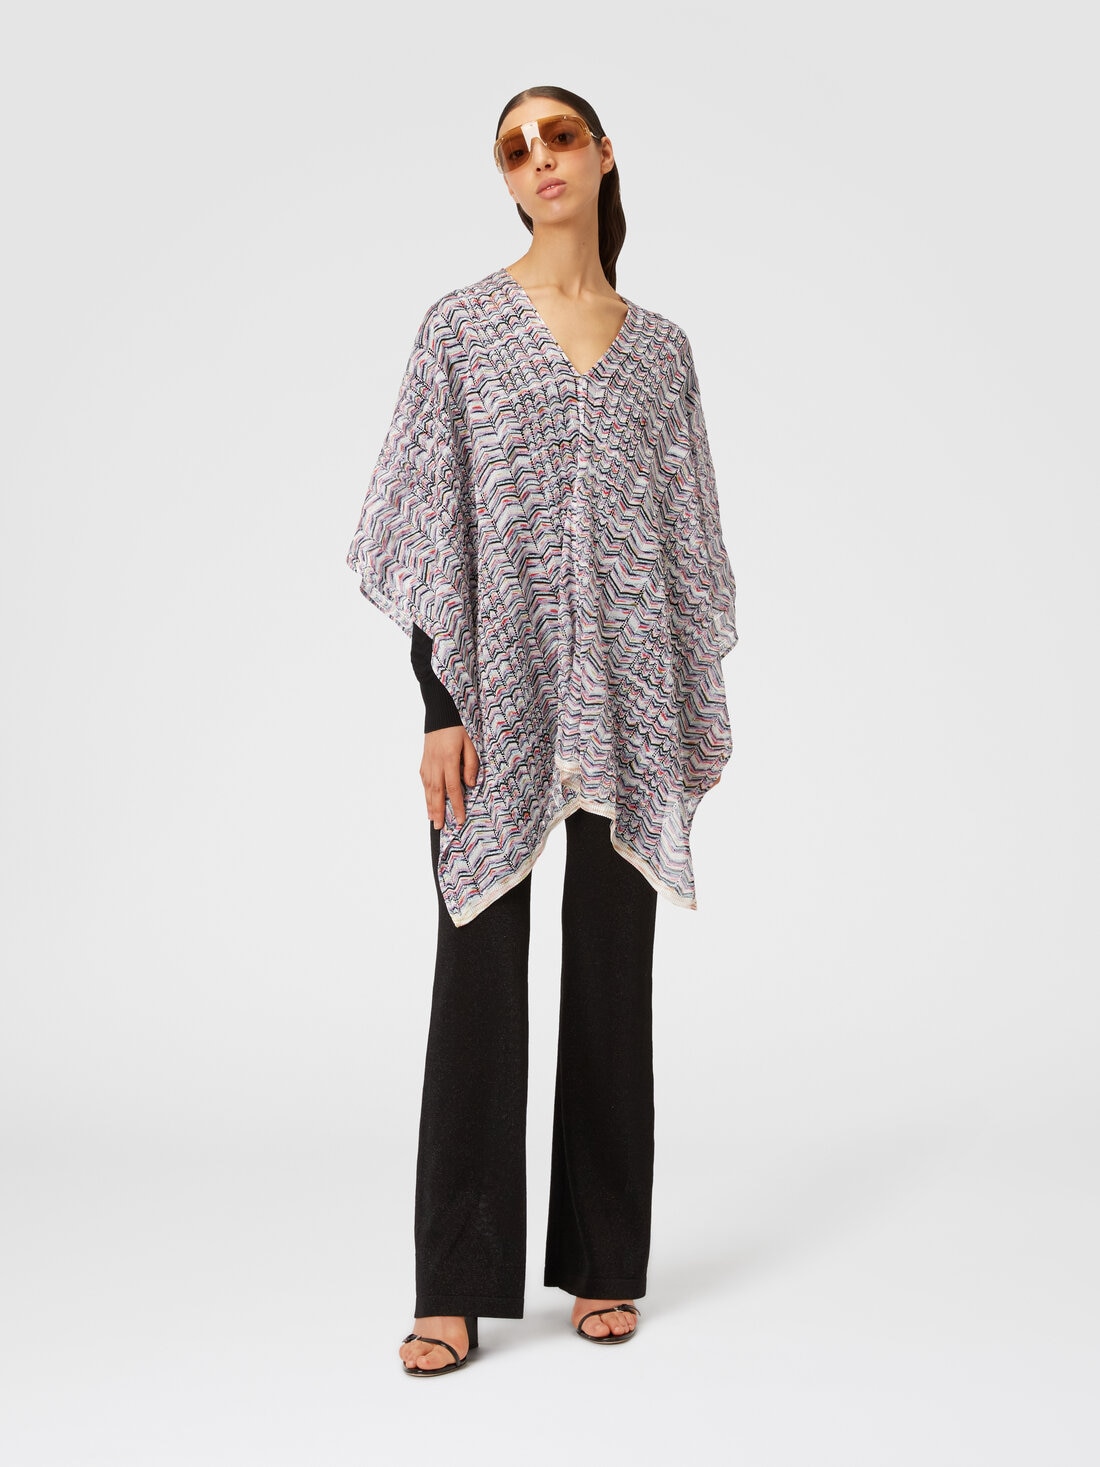 Poncho in viscose and cotton chevron knit, Multicoloured  - 8053147141190 - 1